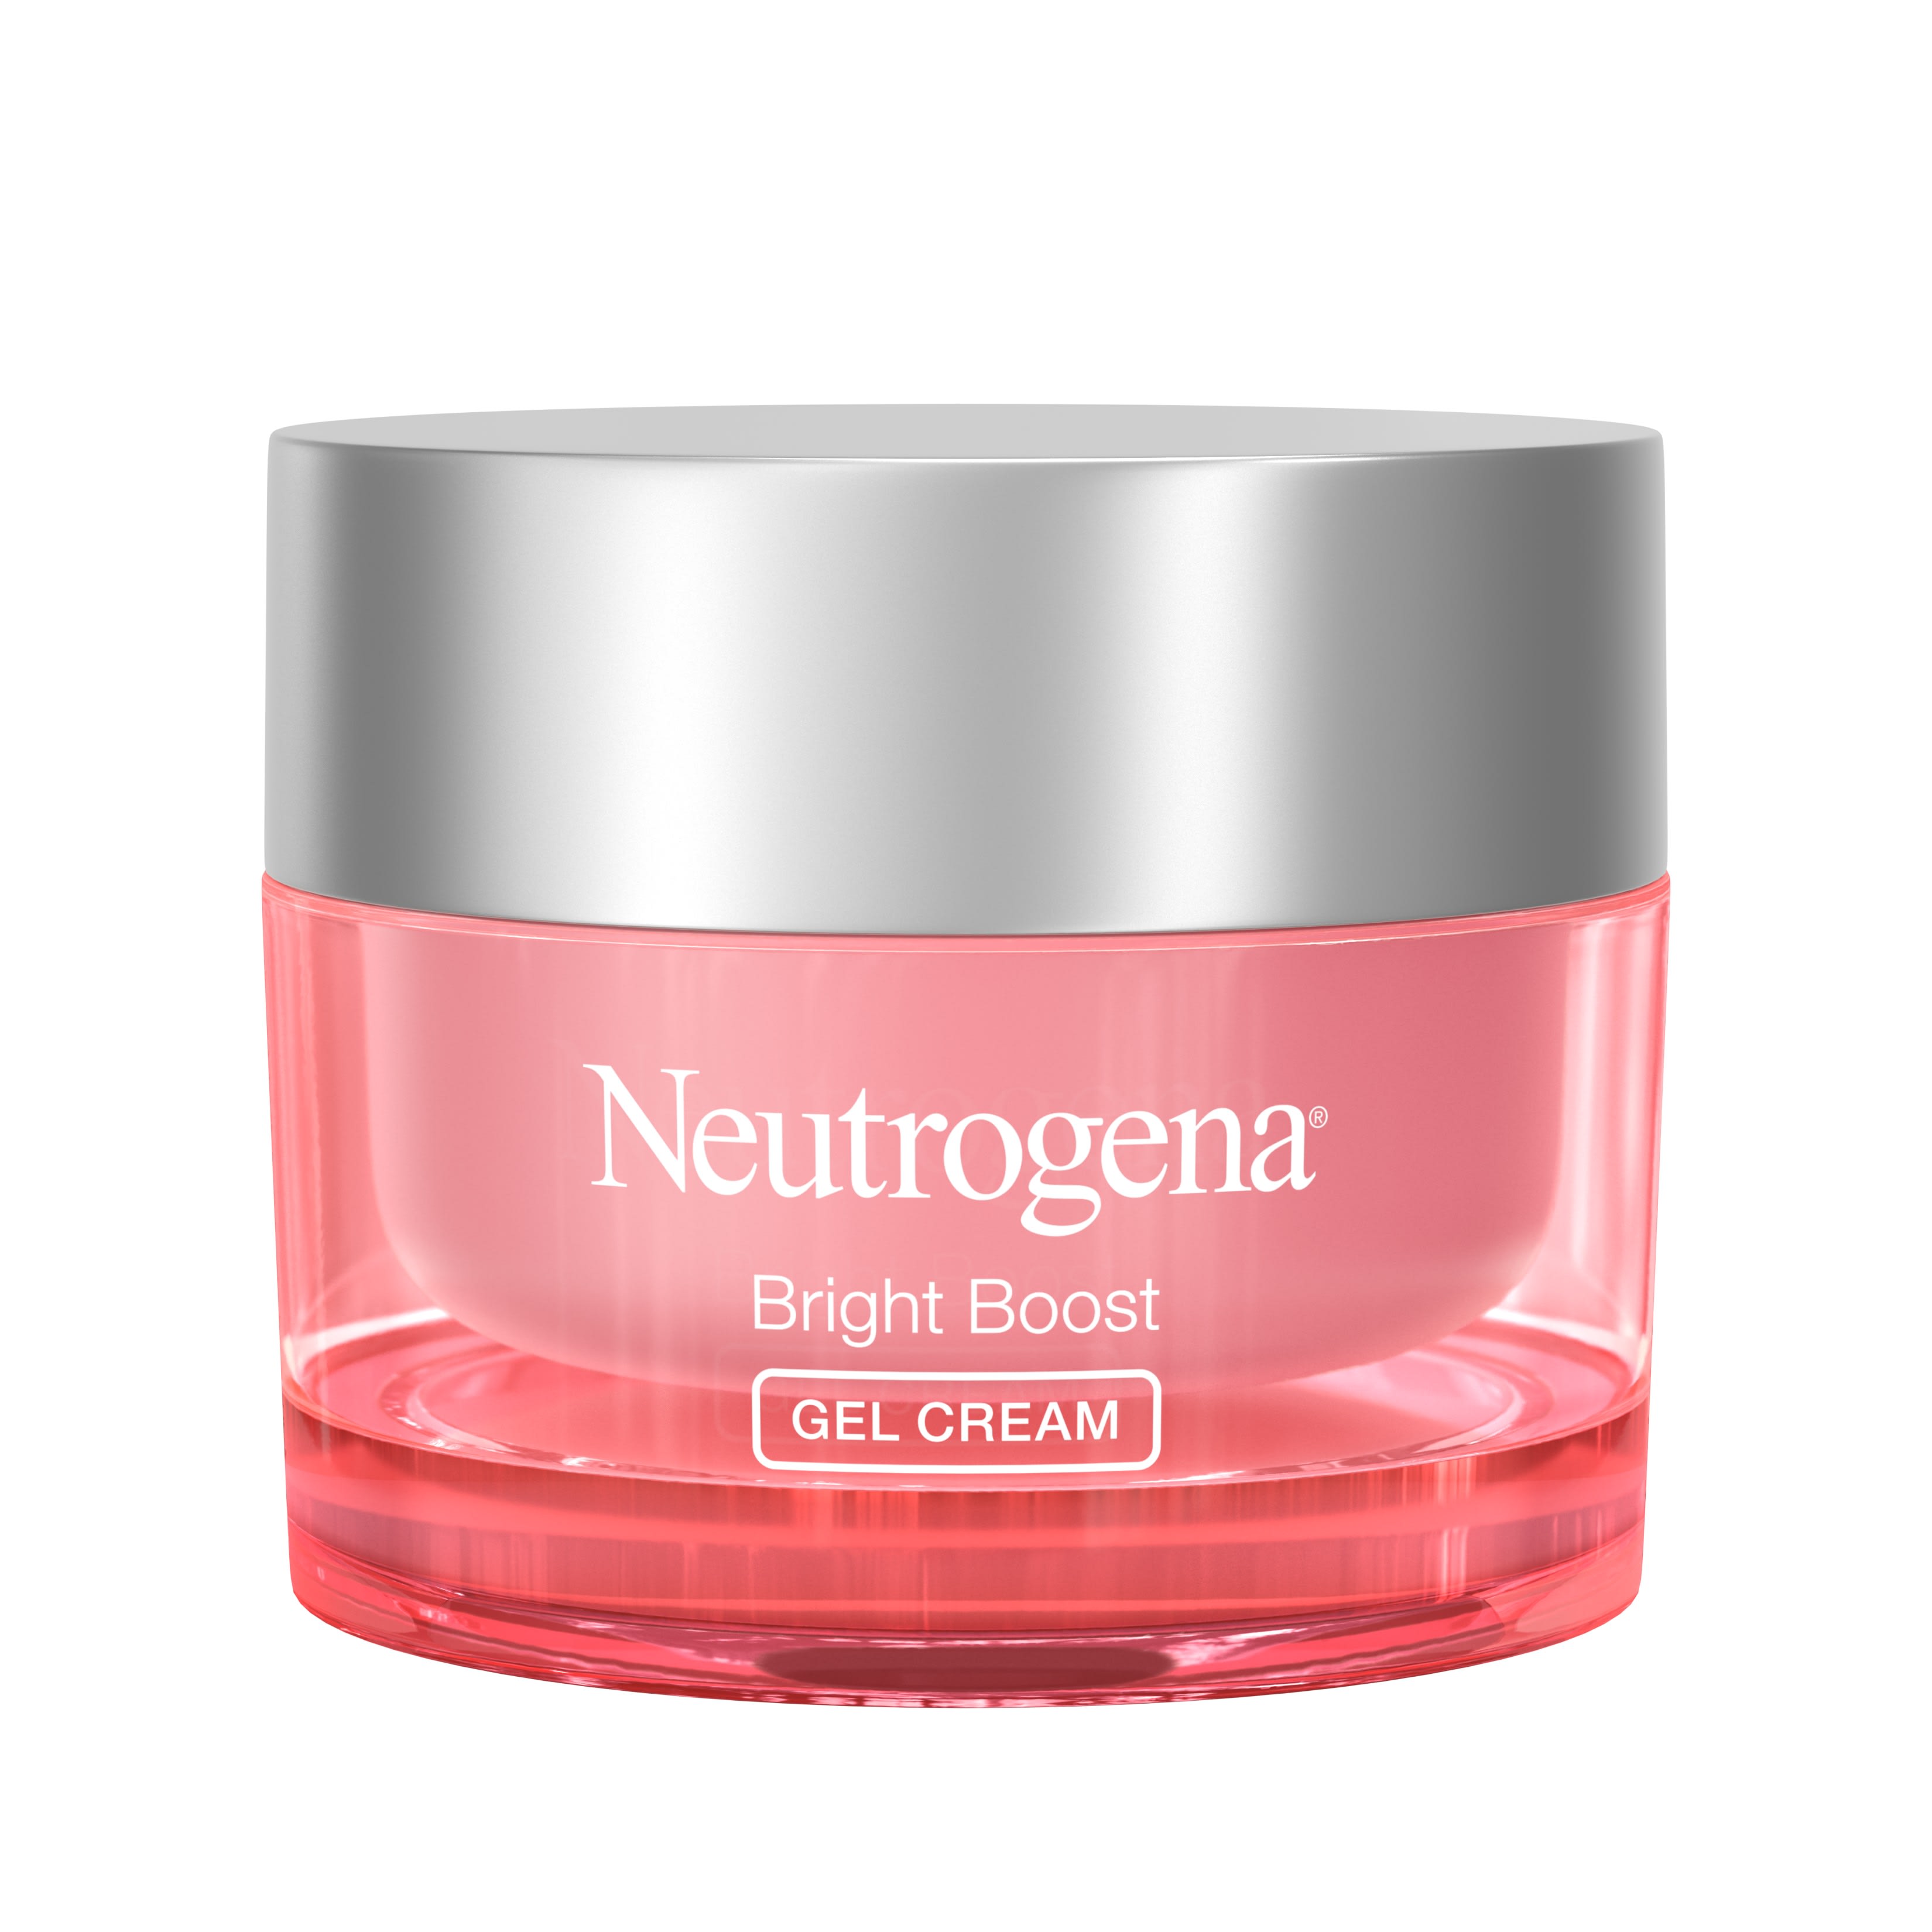 Neutrogena Bright Boost Brightening Gel Moisturizer Face Cream, 1.7 fl. oz - image 1 of 18